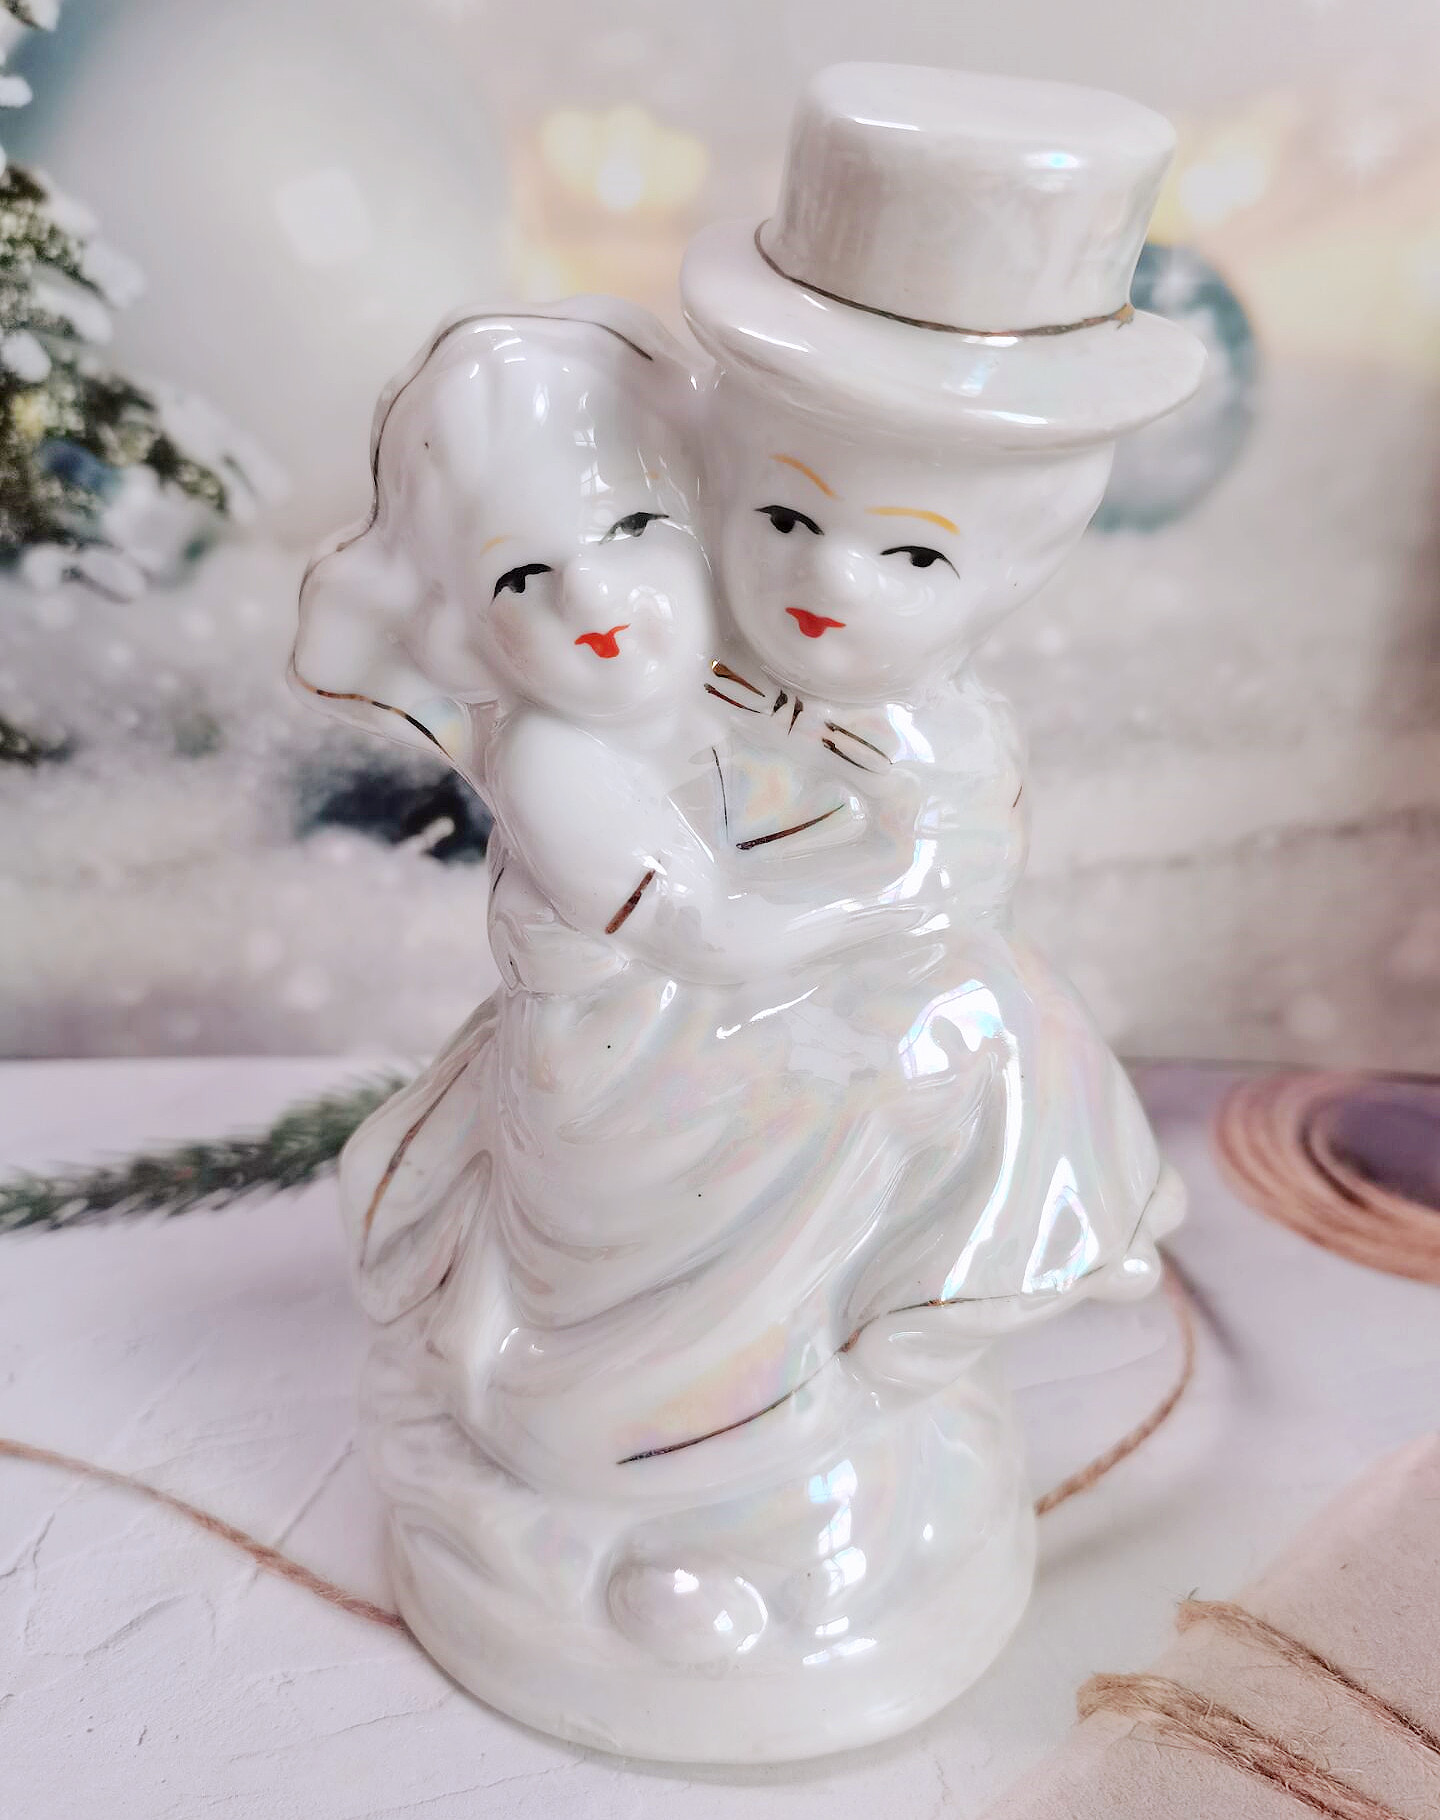 出口欧式工艺品生日情侣结婚庆礼品新郎新娘陶瓷人物摆件客厅桌面